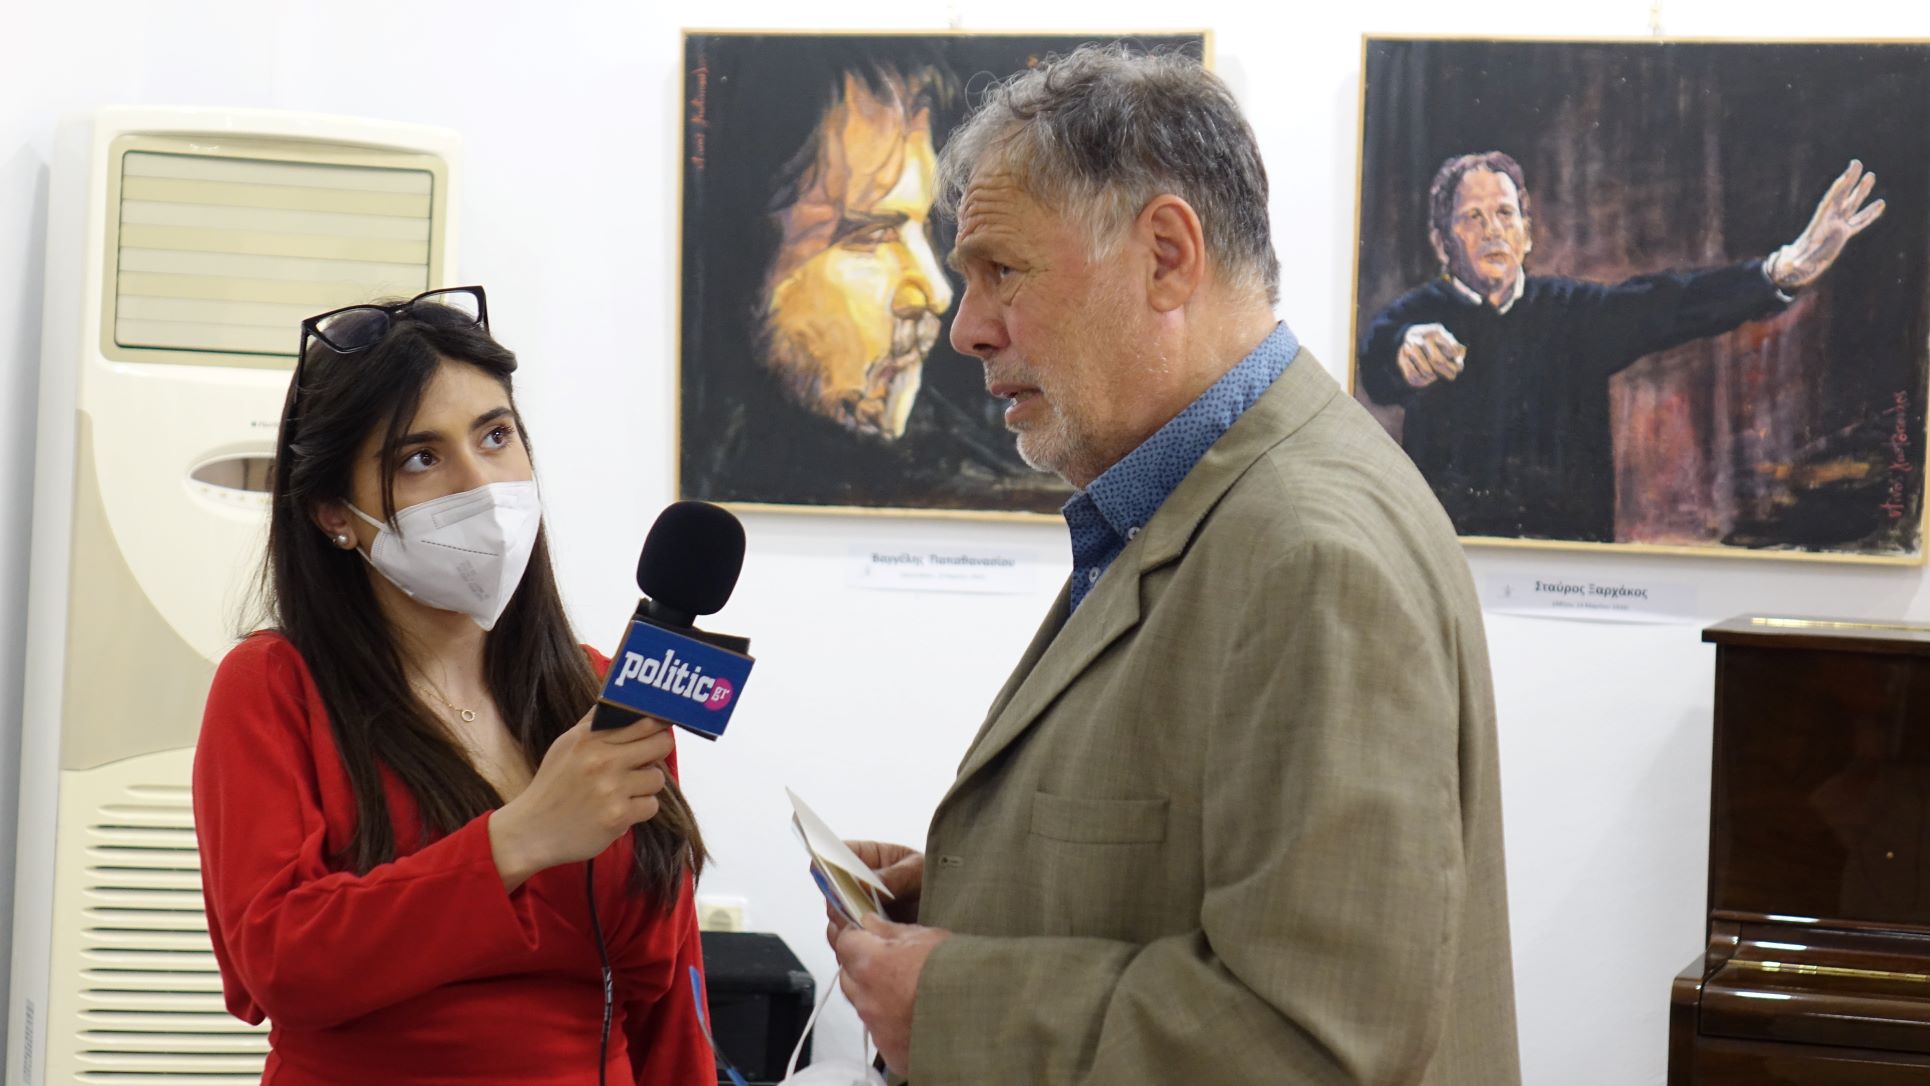 Έλληνες με ταξίδεψαν Μέσα από τα μάτια του μεγάλου ζωγράφου Ντίνου Γιωτόπουλου